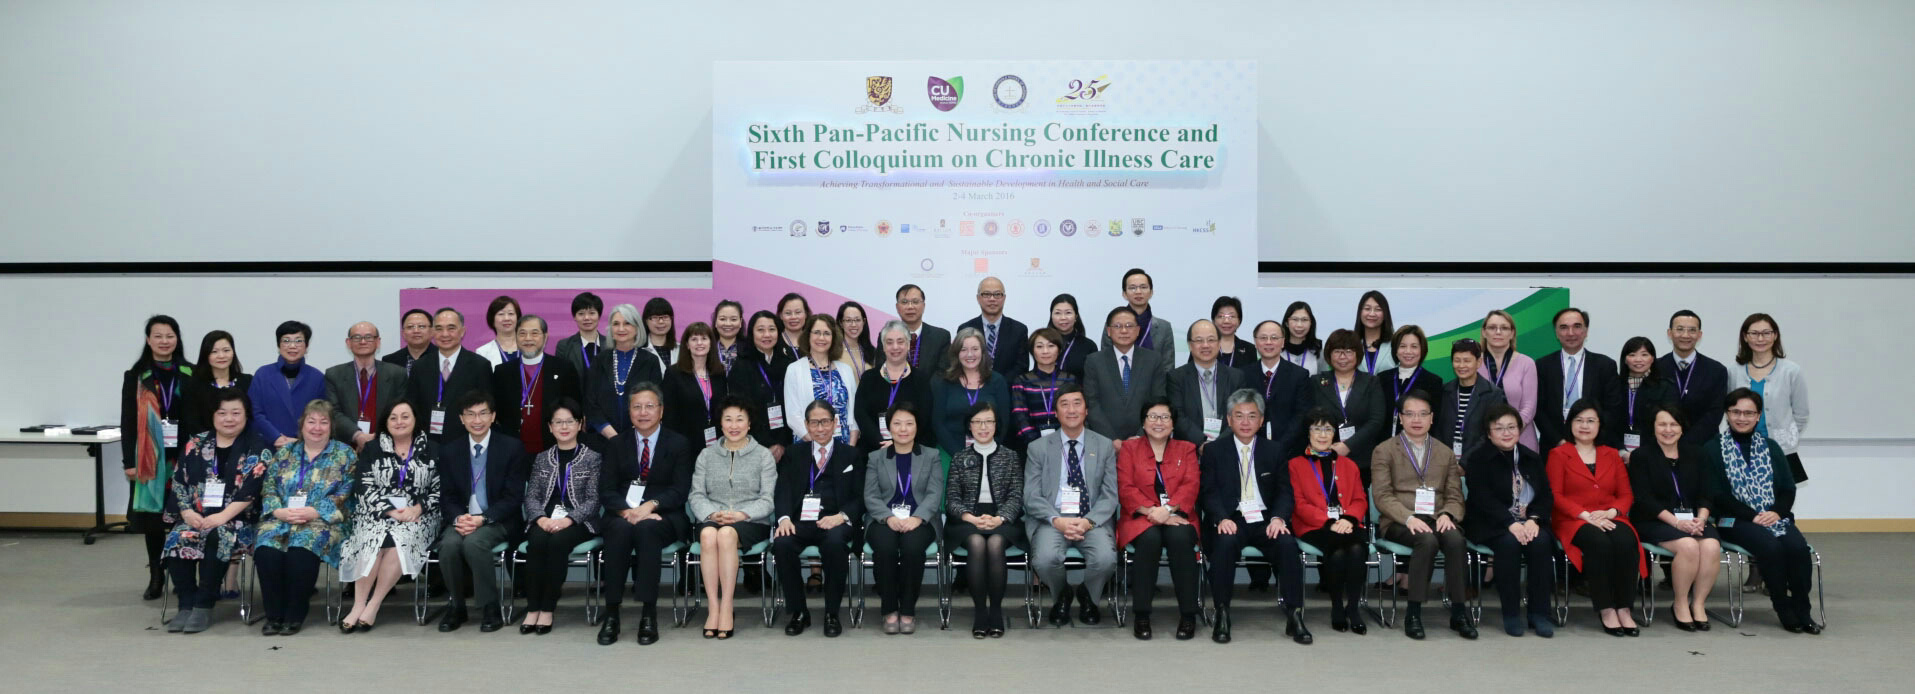 第六屆泛太平洋護理會議暨第一屆慢性病護理研討會開幕典禮